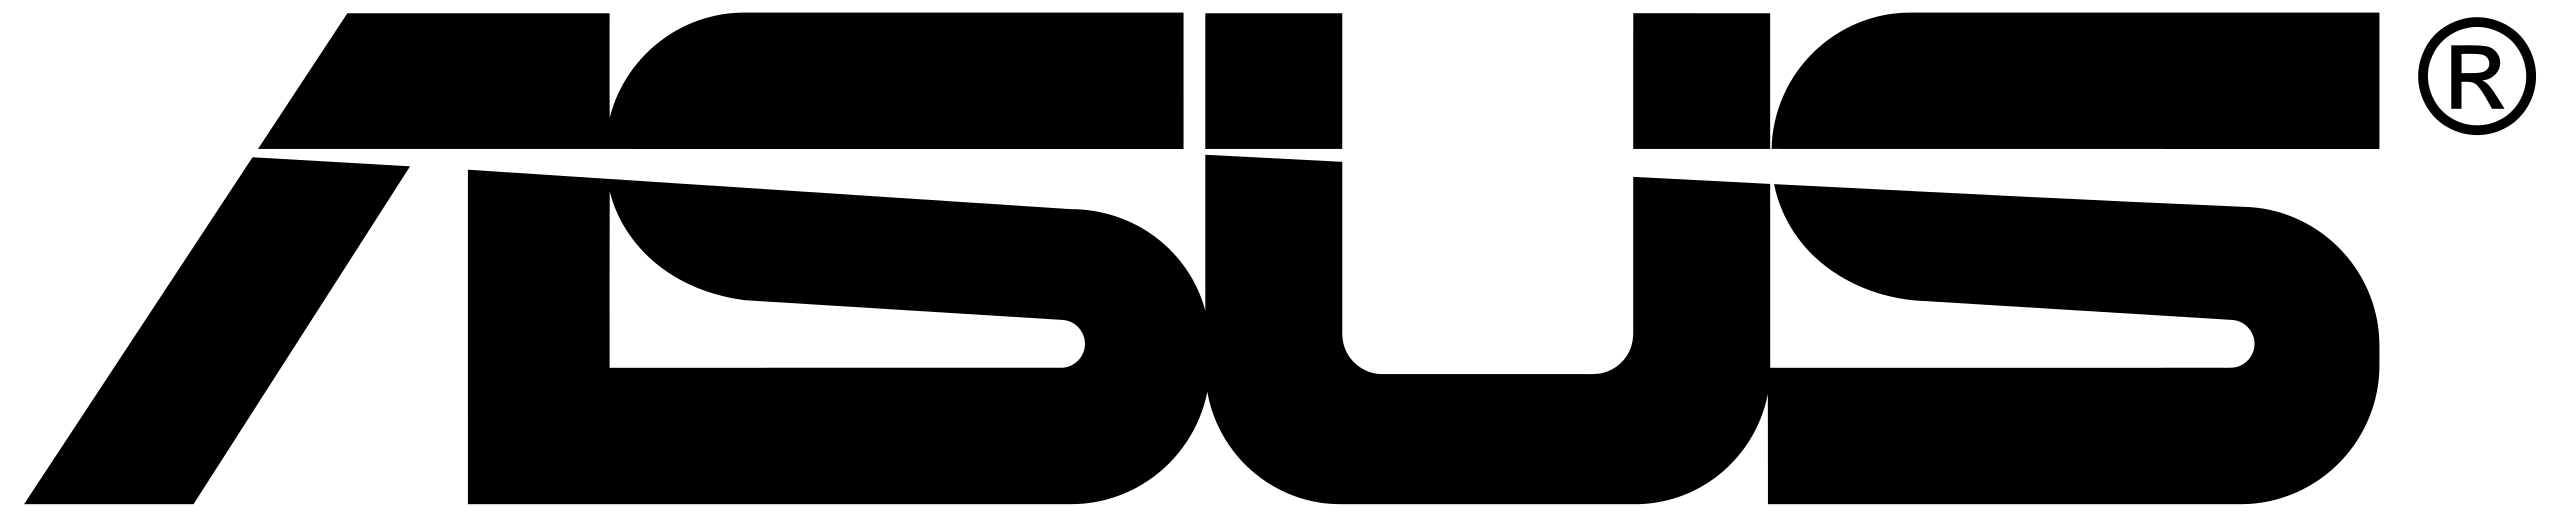 2560px-AsusTek_logo.svg